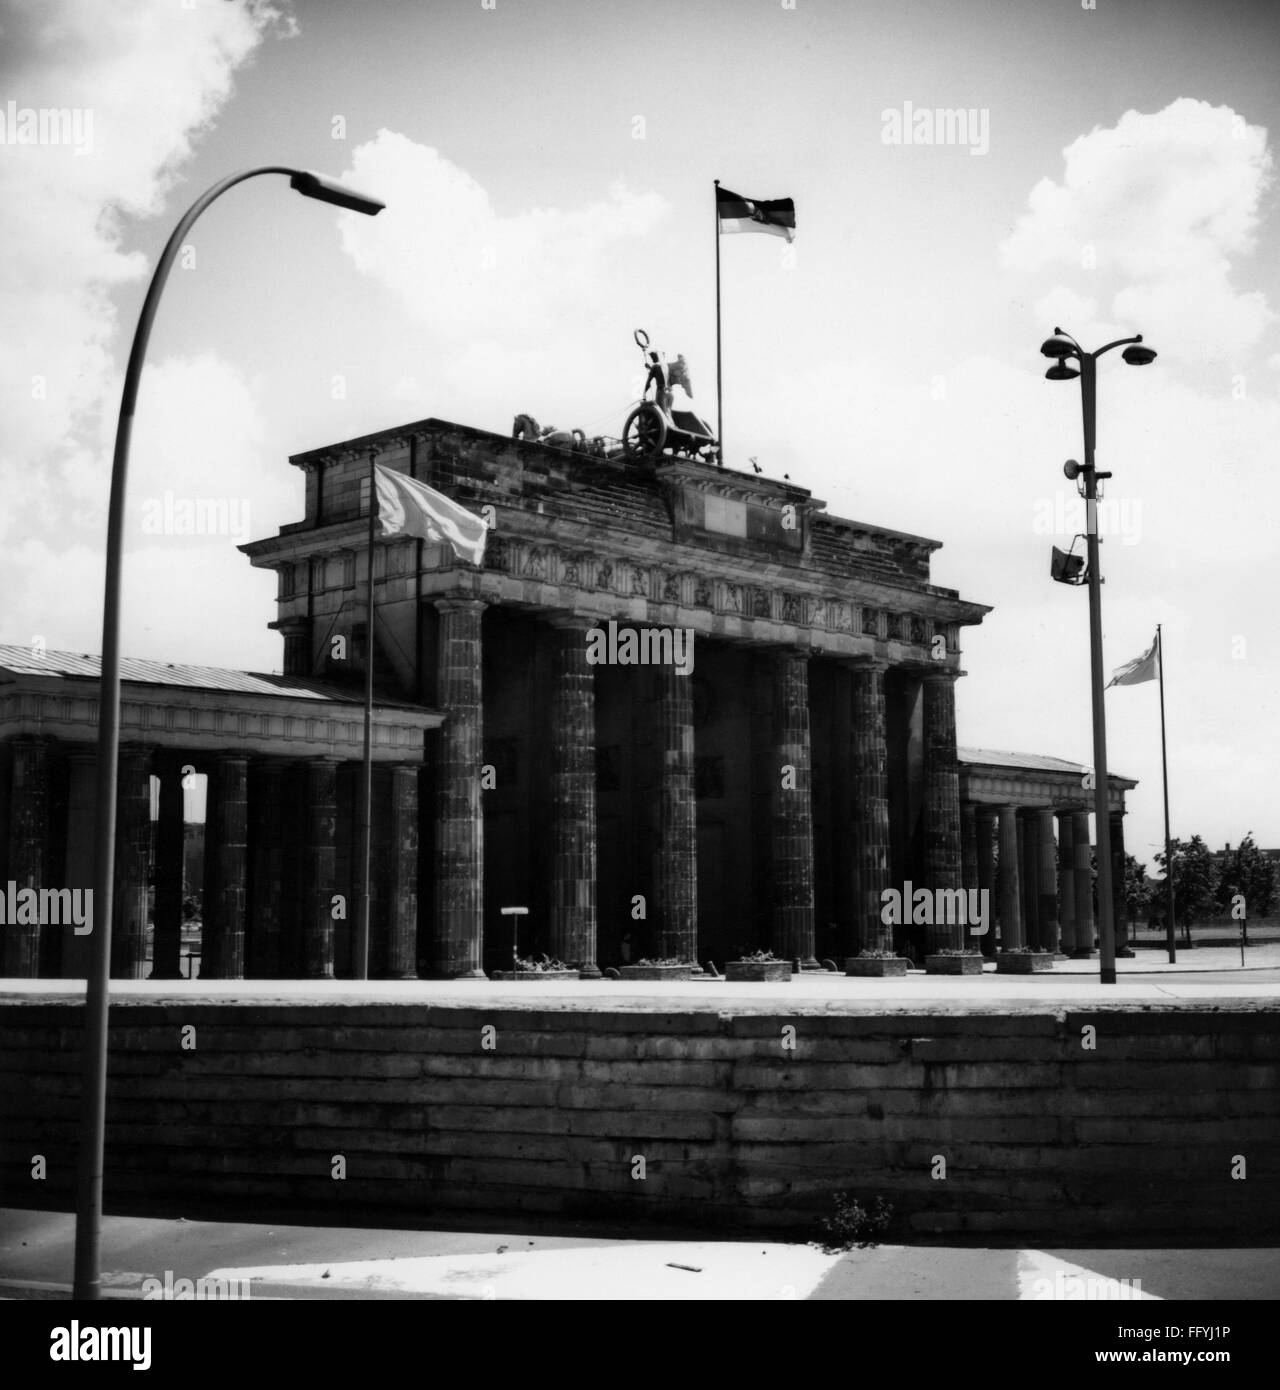 Geographie / Reisen, Deutschland, Berlin, Brandenburger Tor, Westseite mit Berliner Mauer, 1970, Additional-Rights-Clearences-not available Stockfoto